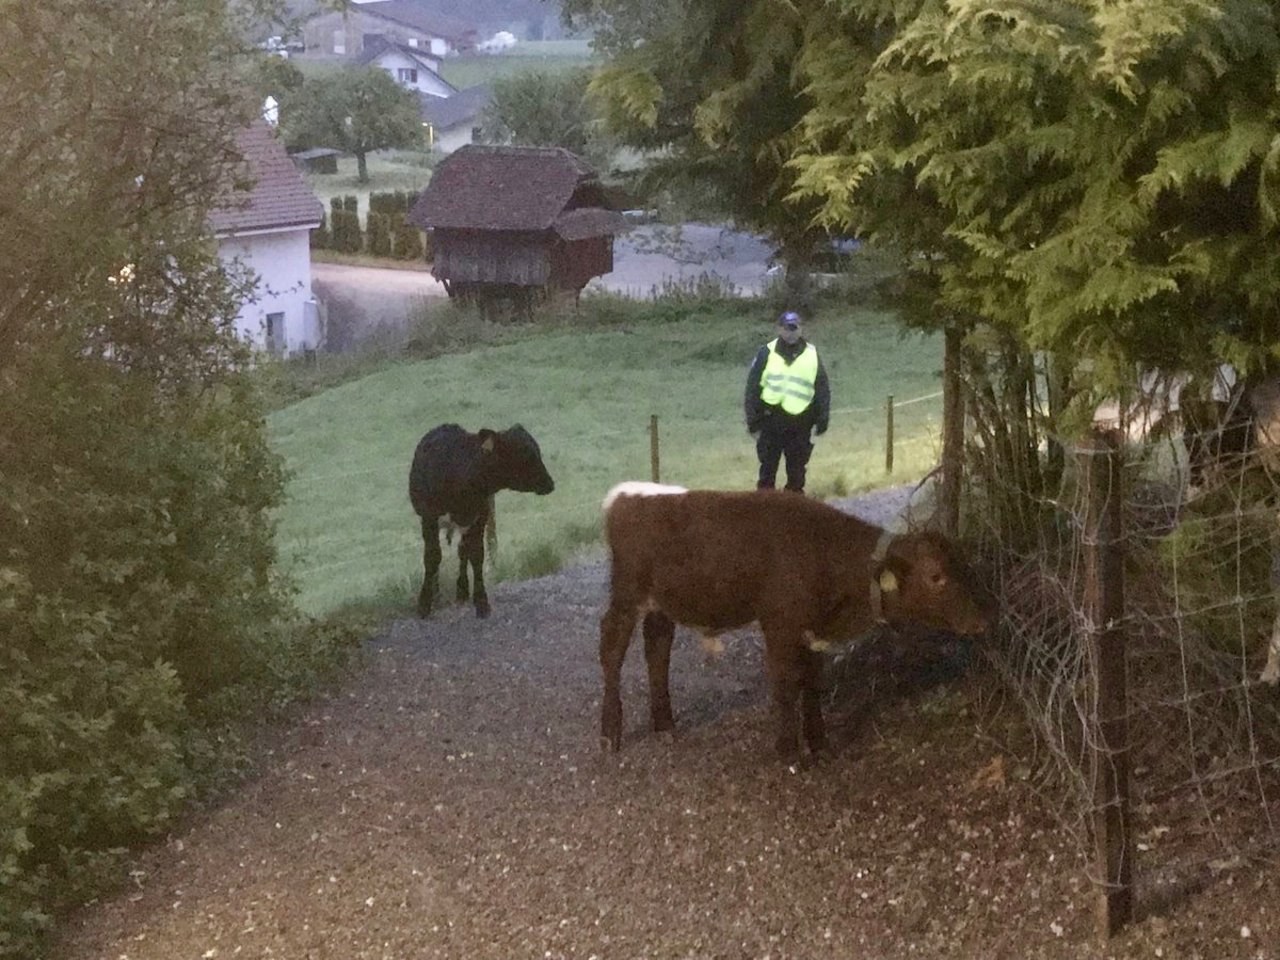 Die beiden Rinder konnten sicher wieder auf ihre Weide gebracht werden. (Bild Kantonspolizei Aargau)